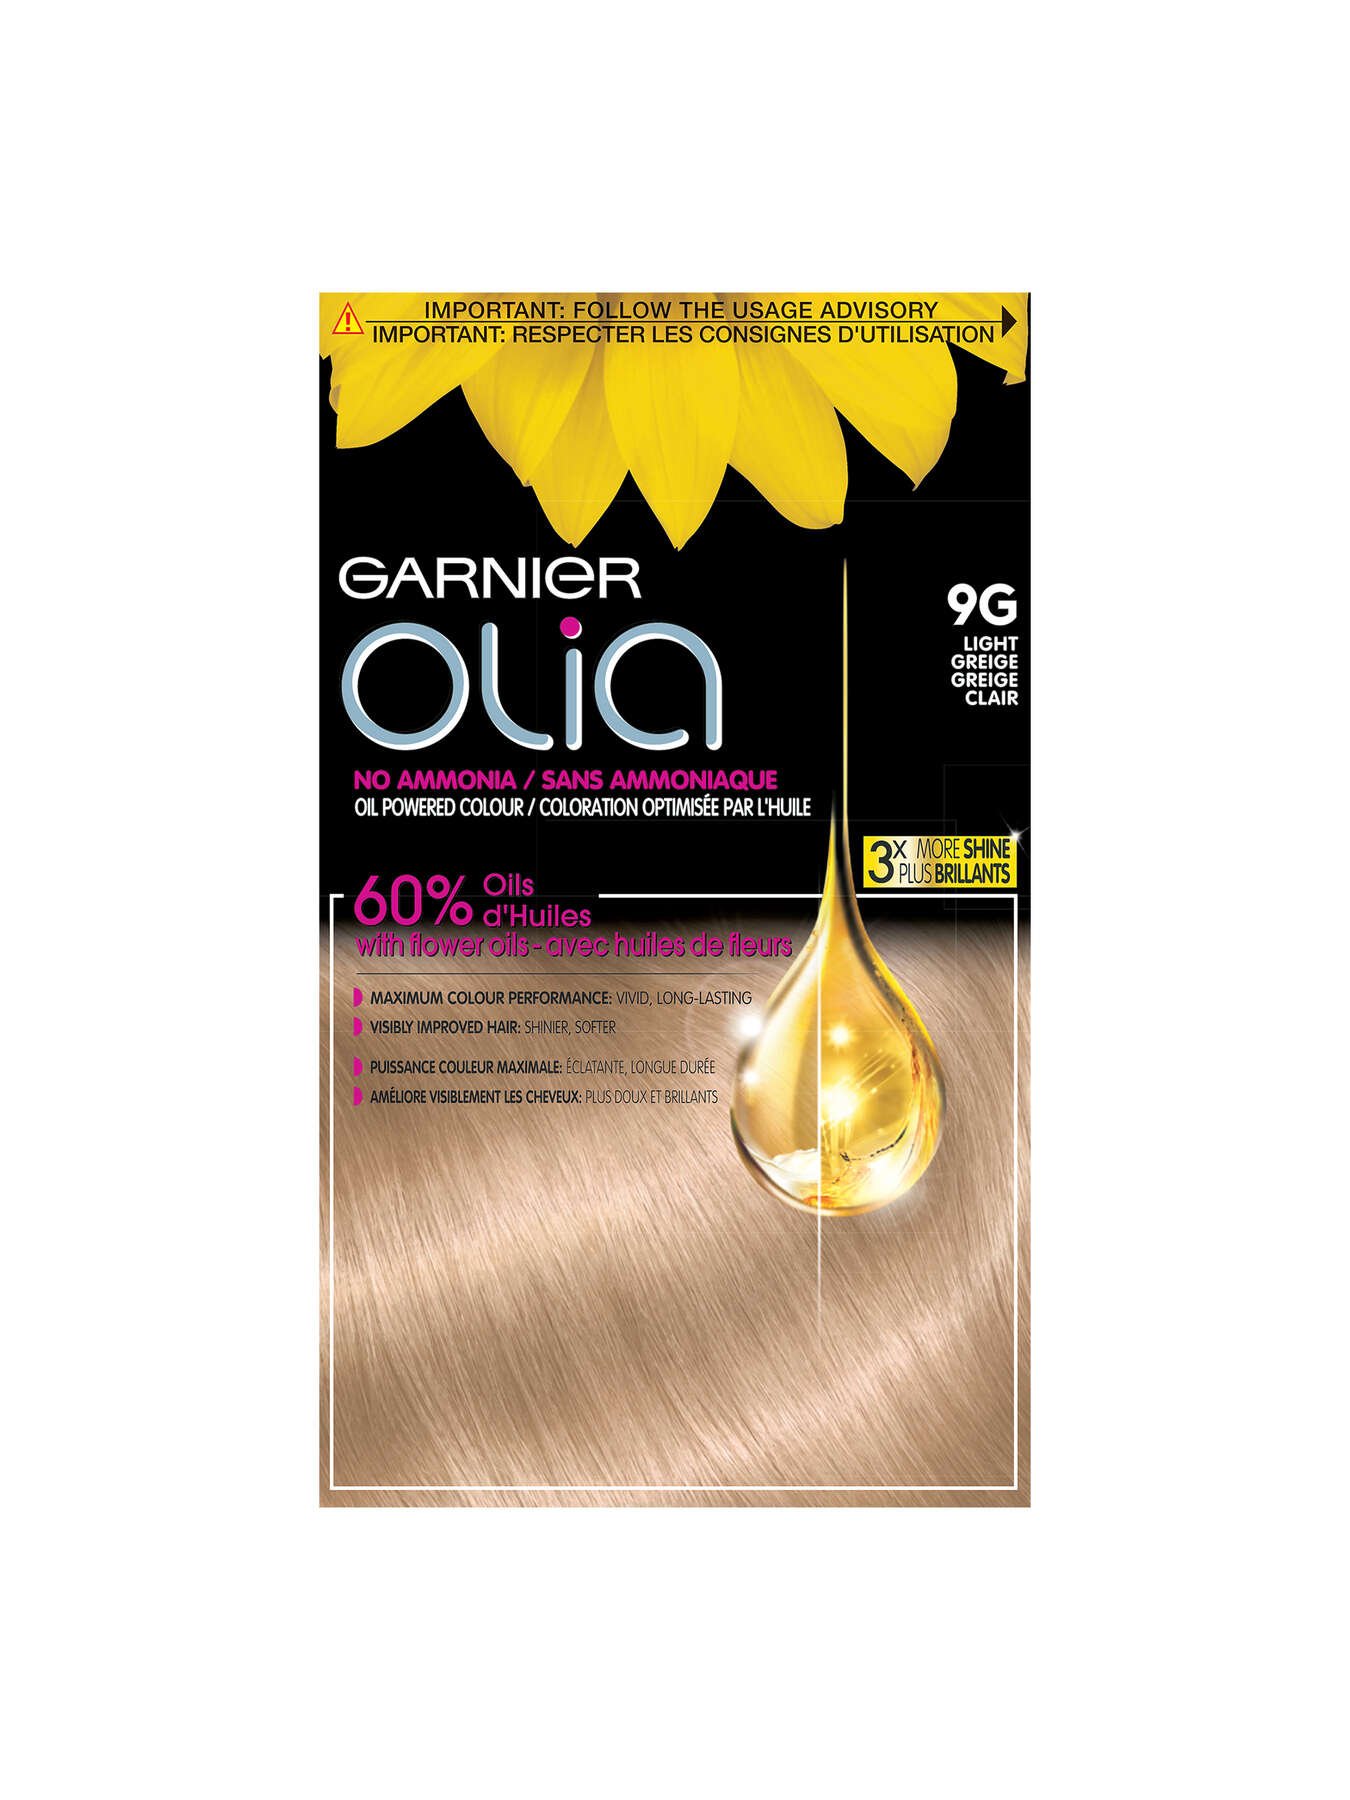 garnier hair dye olia 9g light greige 3600542031134 t1